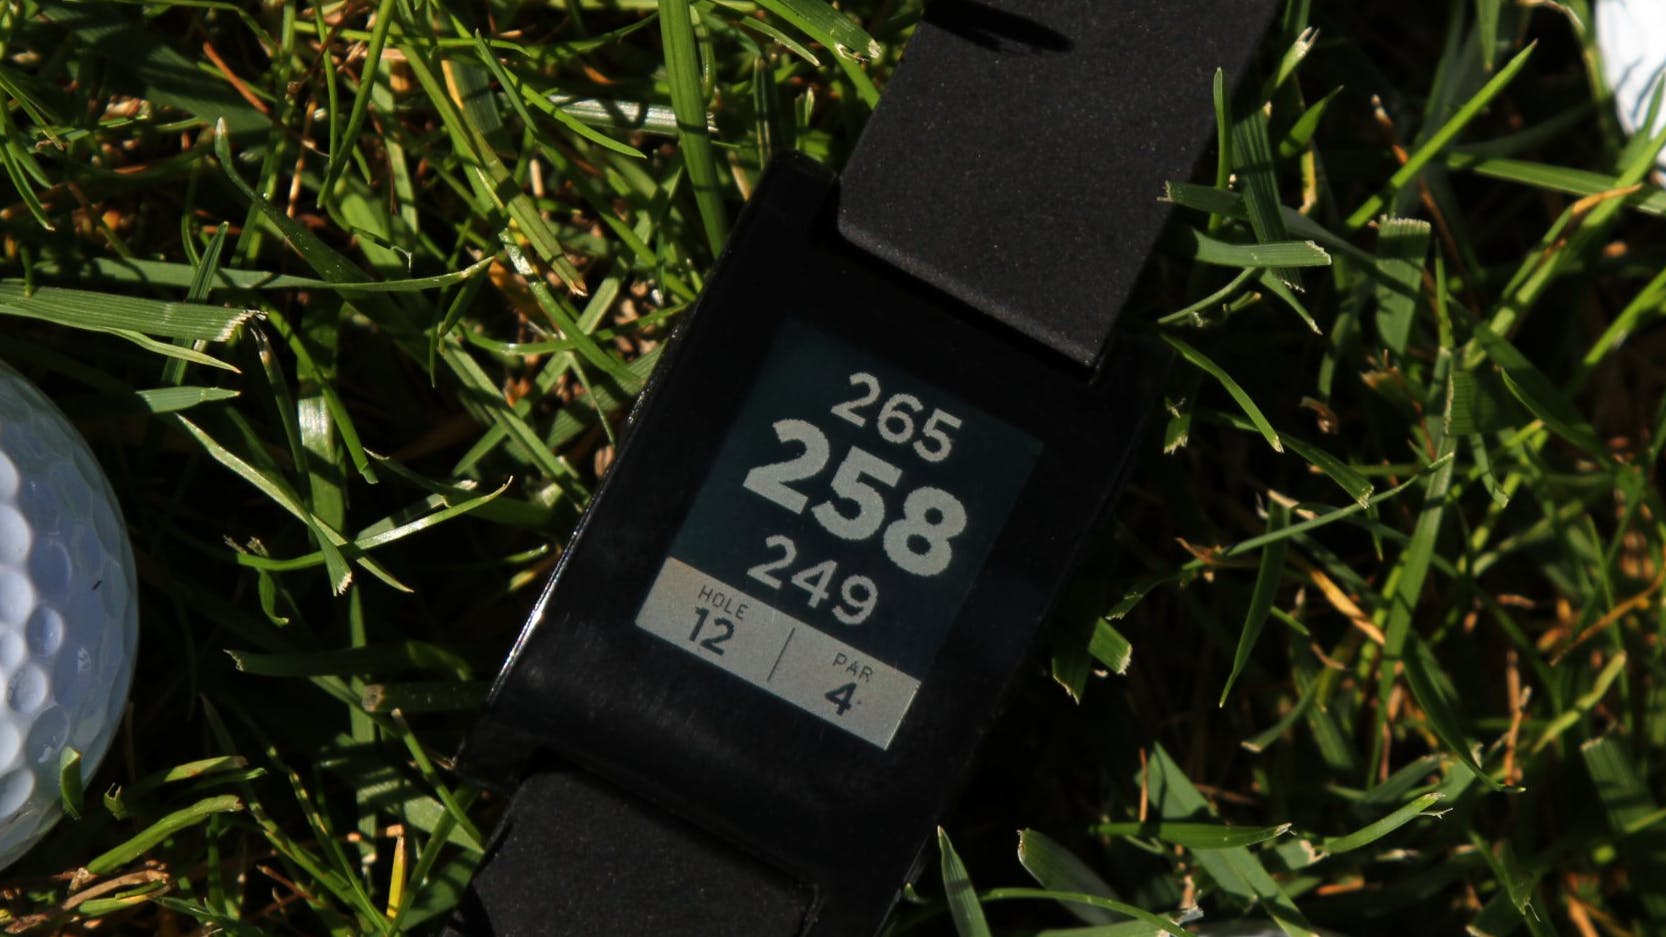 Pebble E-Paper Watch displaying Freecaddie golf rangefinder app. Also pictured, three golf-balls on grass